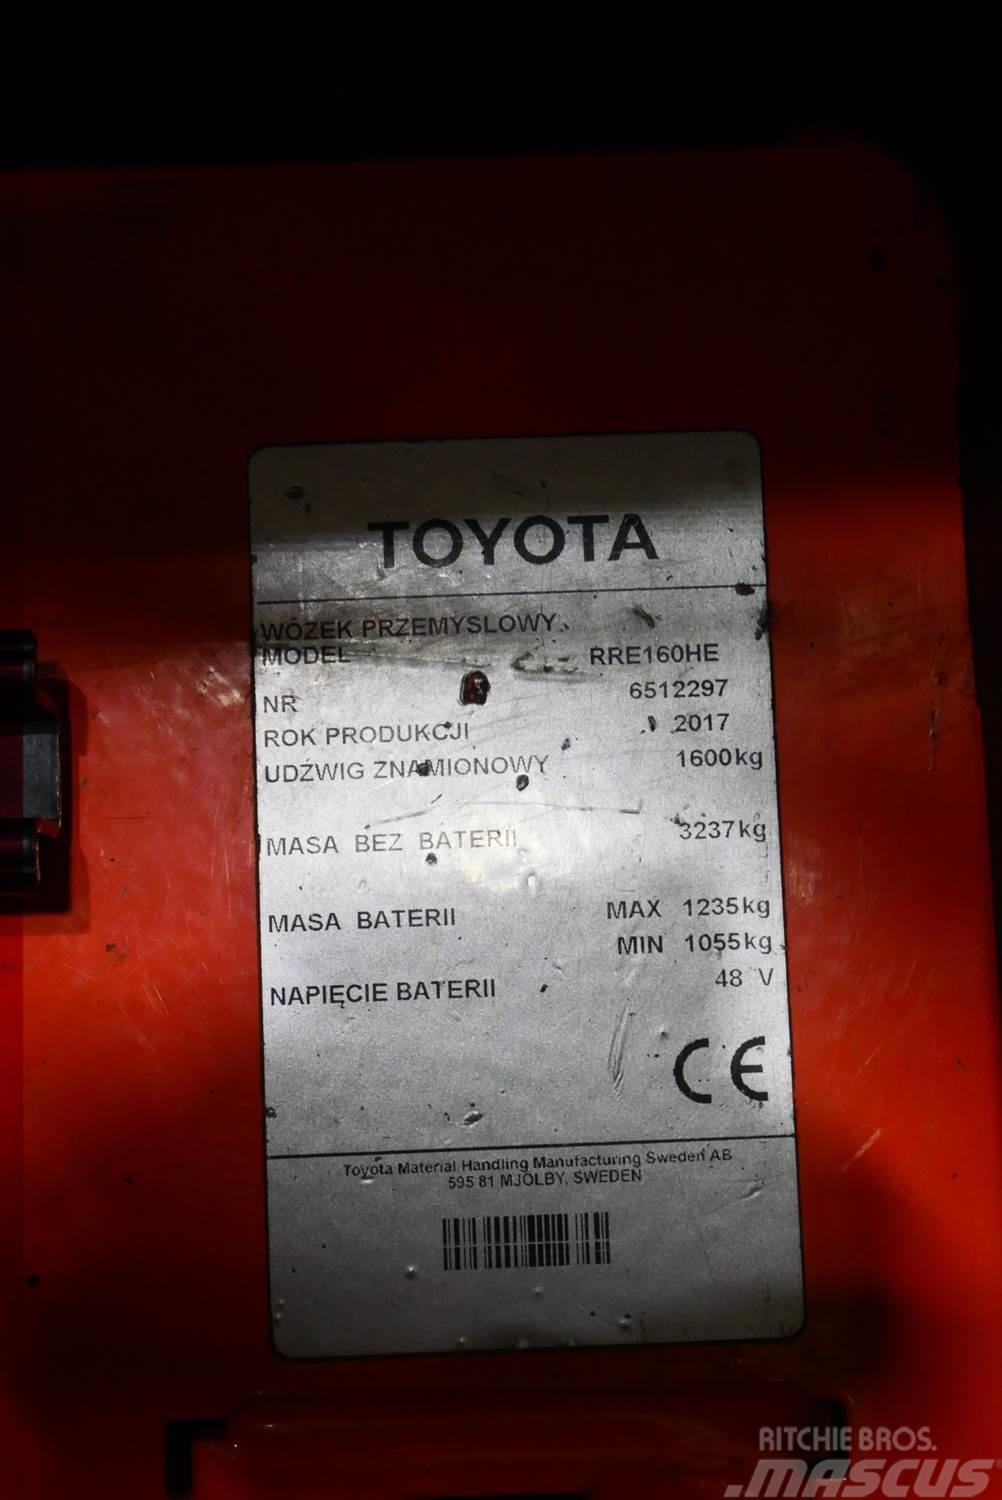 Toyota RRE160HE Työntömastotrukit